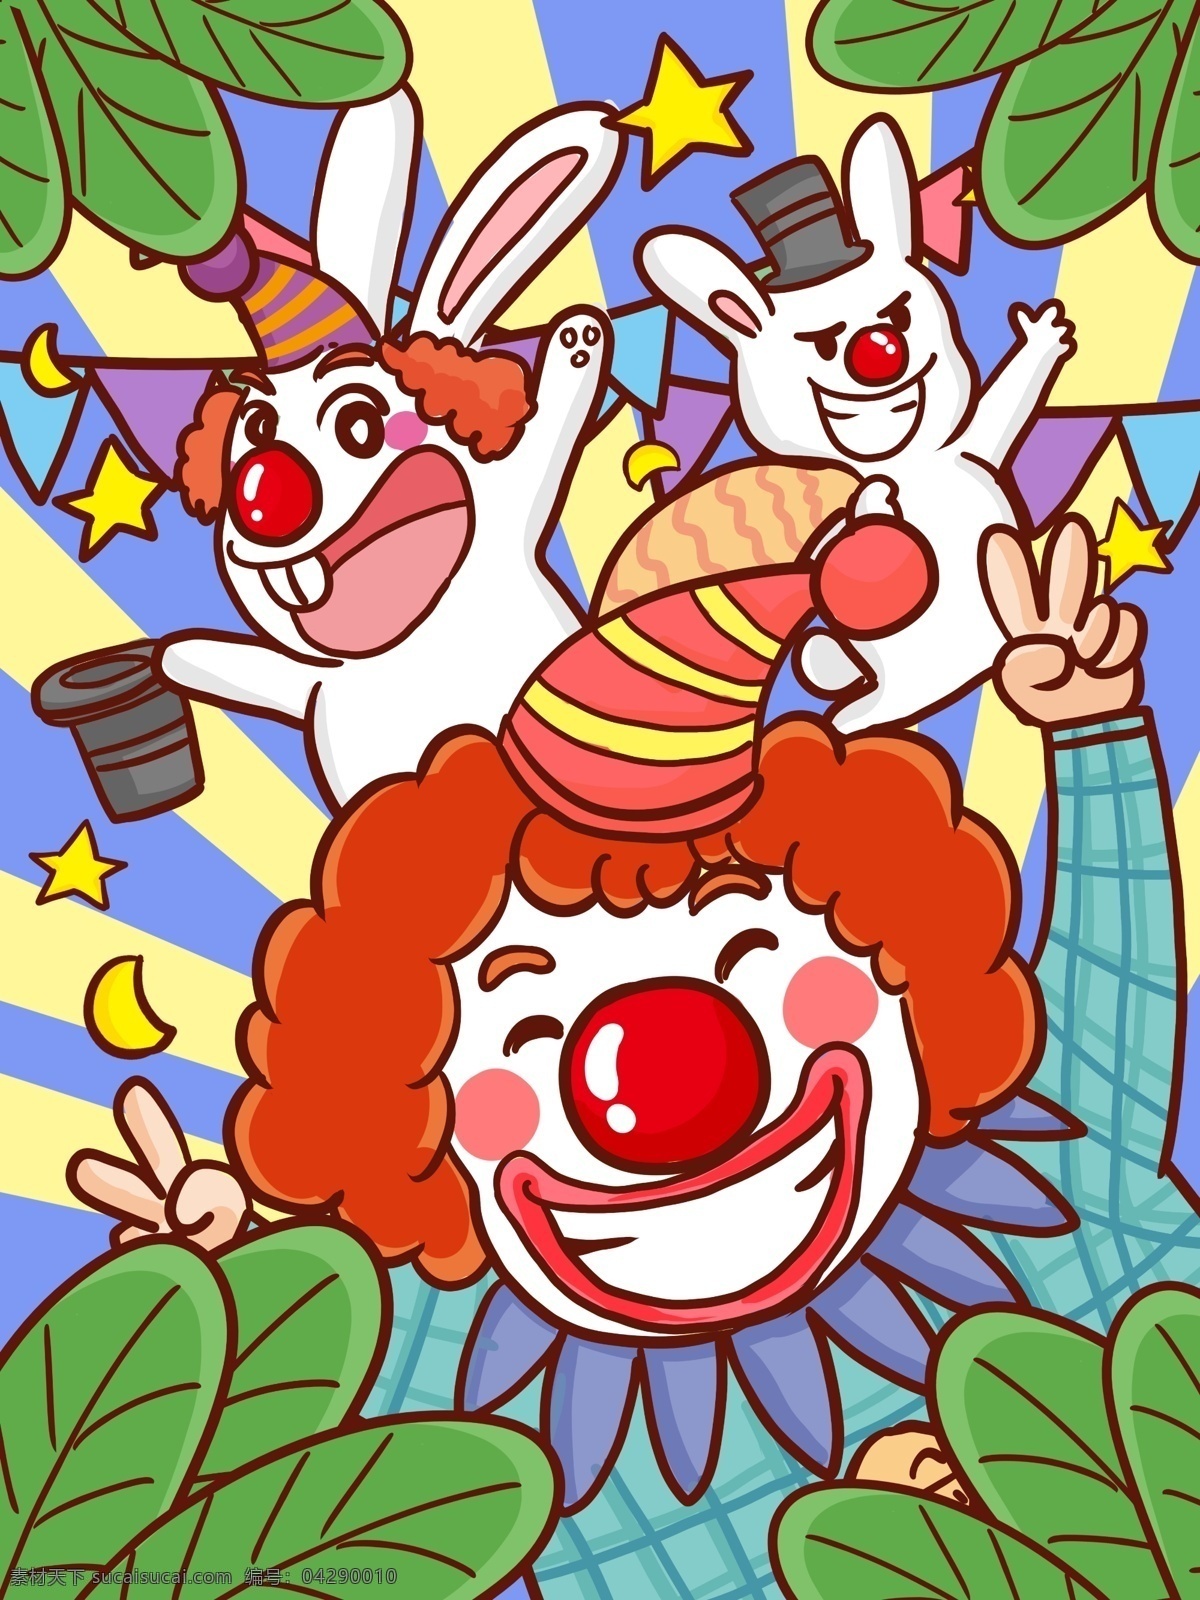 愚人节 小丑 小 白兔 表演 手绘 插画 四月一日 开心 逗人开心 小白兔 卡通 可爱 变魔术 红鼻子